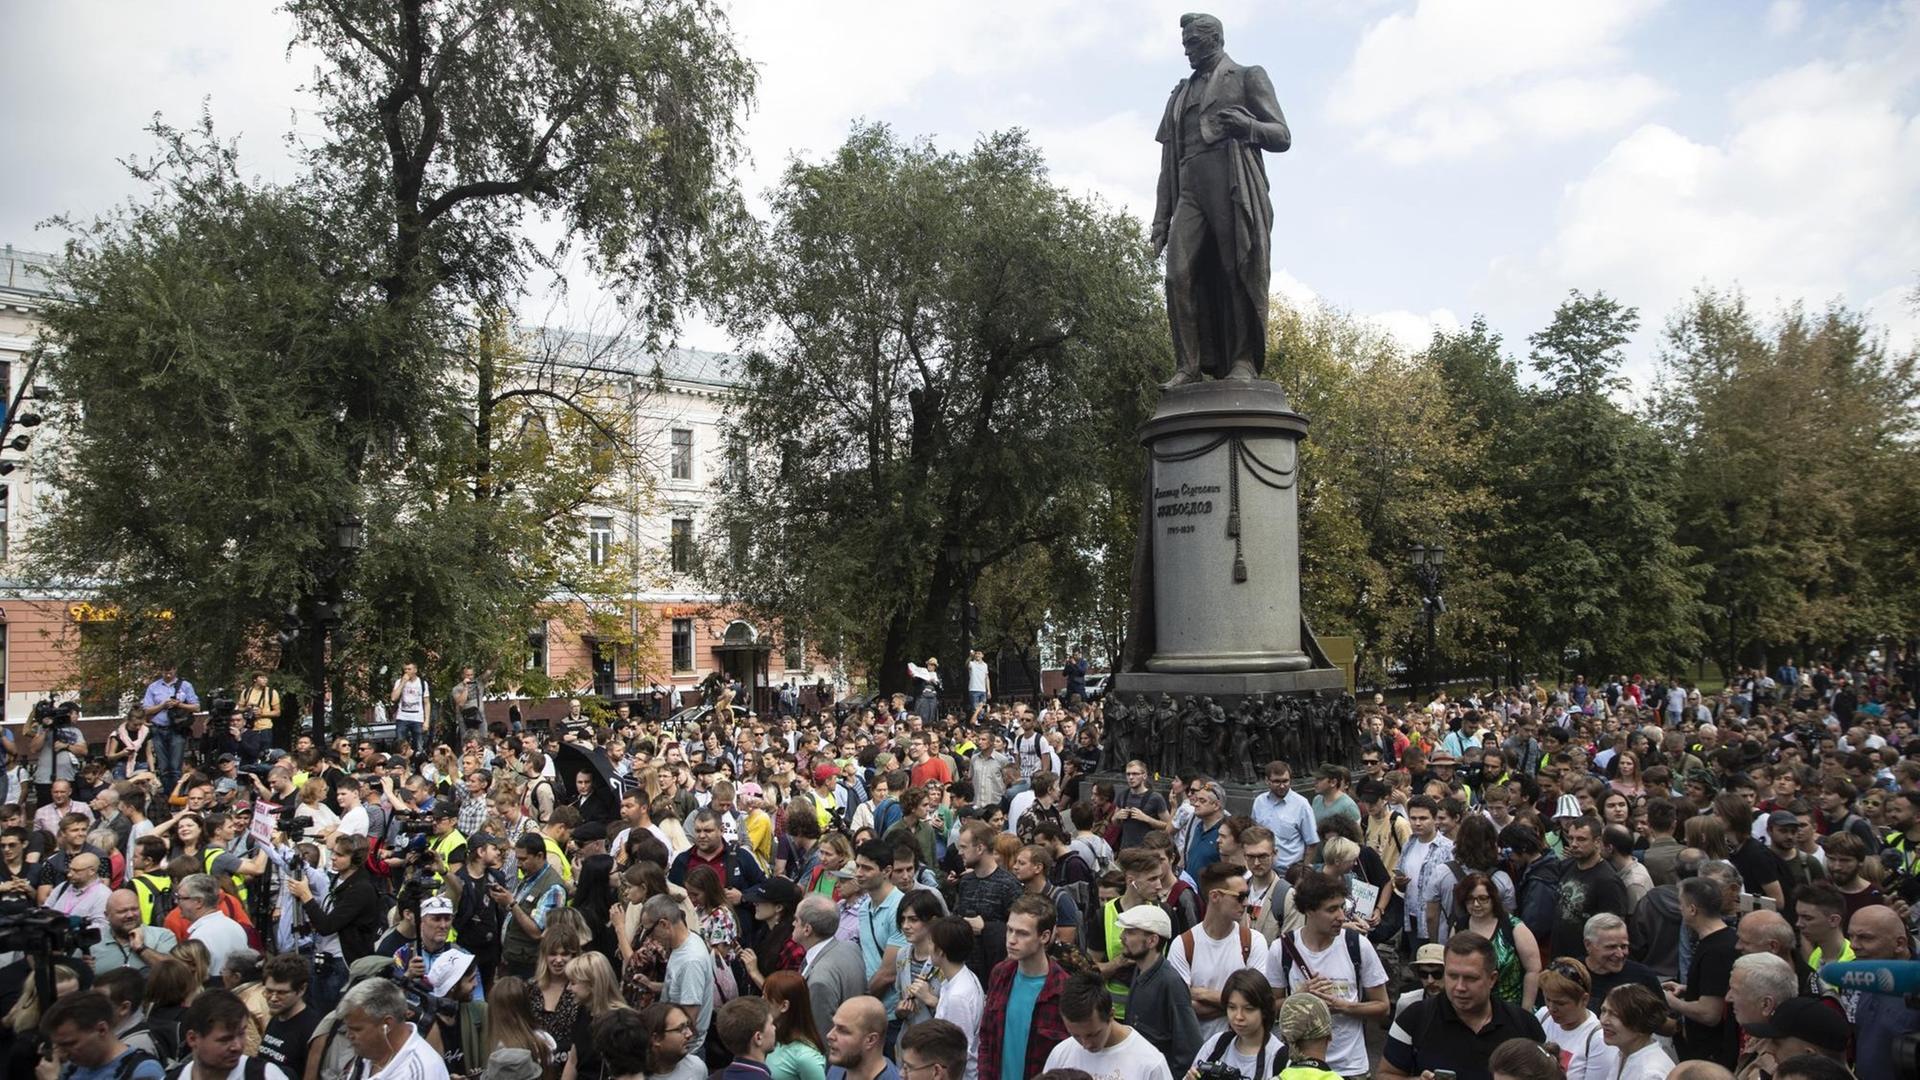 31.08.2019, Russland, Moskau: Menschen nehmen an einer Demonstration vor einer Statue des berühmten russischen Dichters Alexander Gribojedow teil. In der russischen Hauptstadt haben erneut Tausende Menschen für freie Wahlen demonstriert. Foto: Pavel Golovkin/AP/dpa +++ dpa-Bildfunk +++